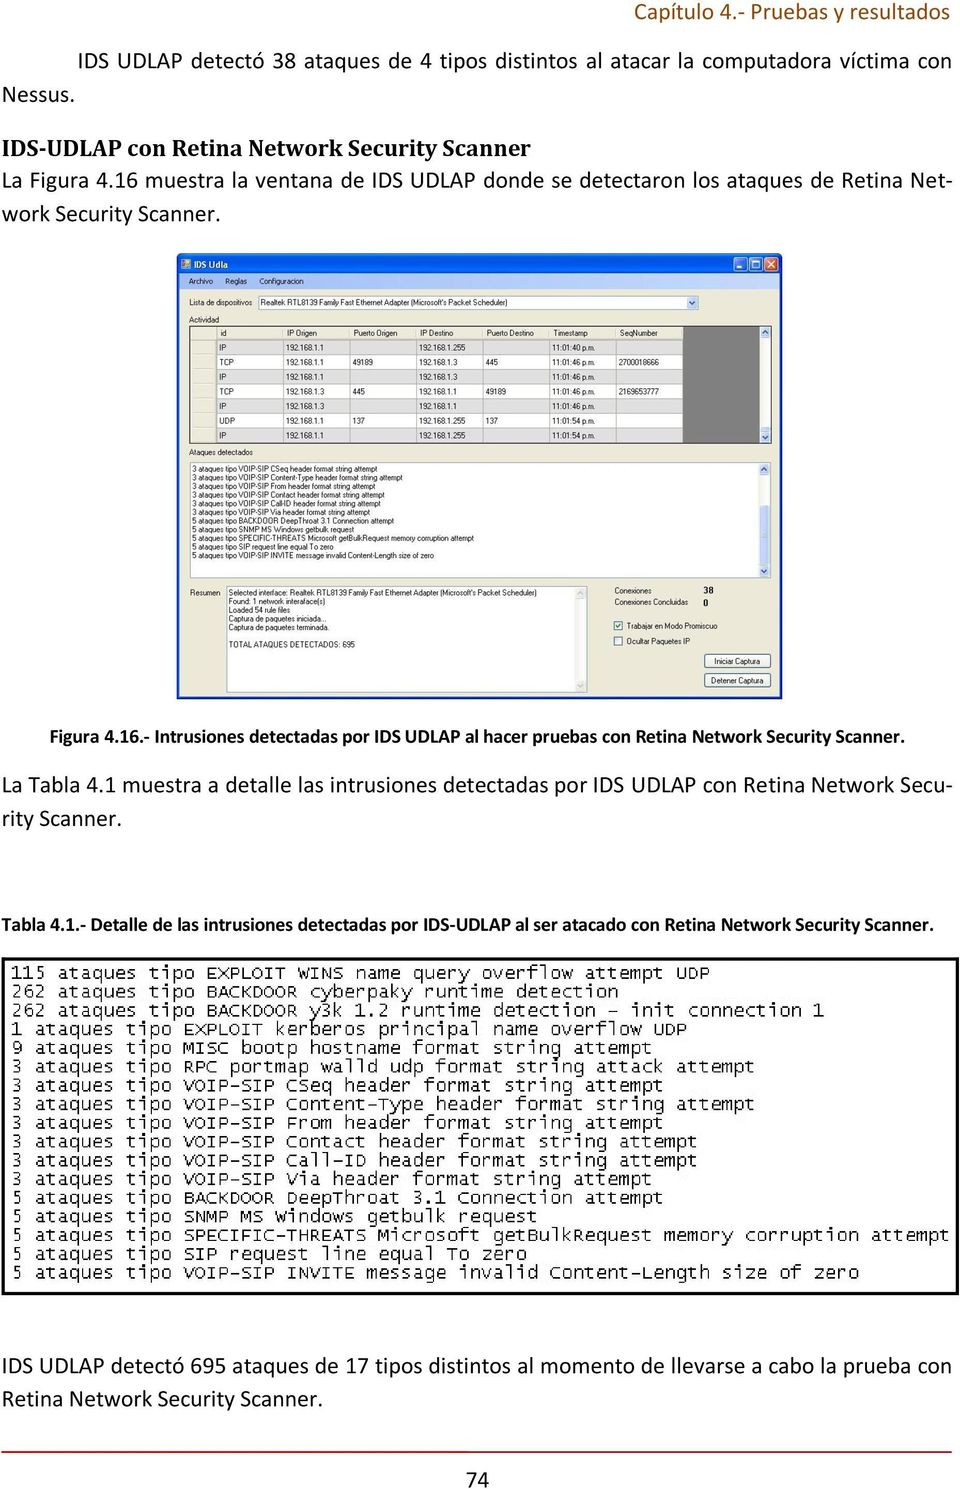 La Tabla 4.1 muestra a detalle las intrusiones detectadas por IDS UDLAP con Retina Network Security Scanner. Tabla 4.1.- Detalle de las intrusiones detectadas por IDS-UDLAP al ser atacado con Retina Network Security Scanner.